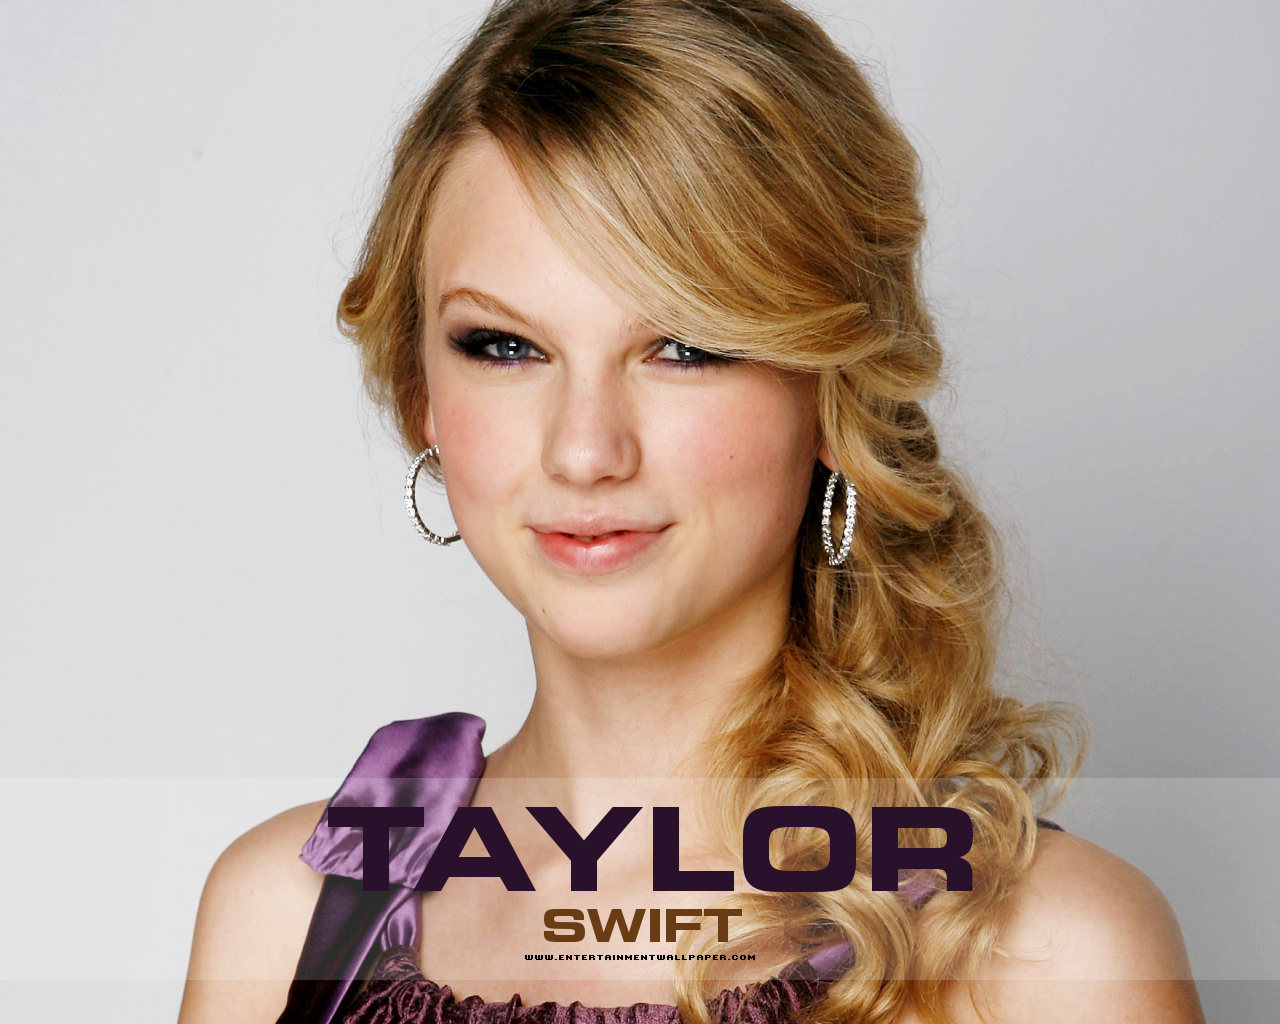 ♥taylor - Taylor Swift Wallpaper (26296721) - Fanpop